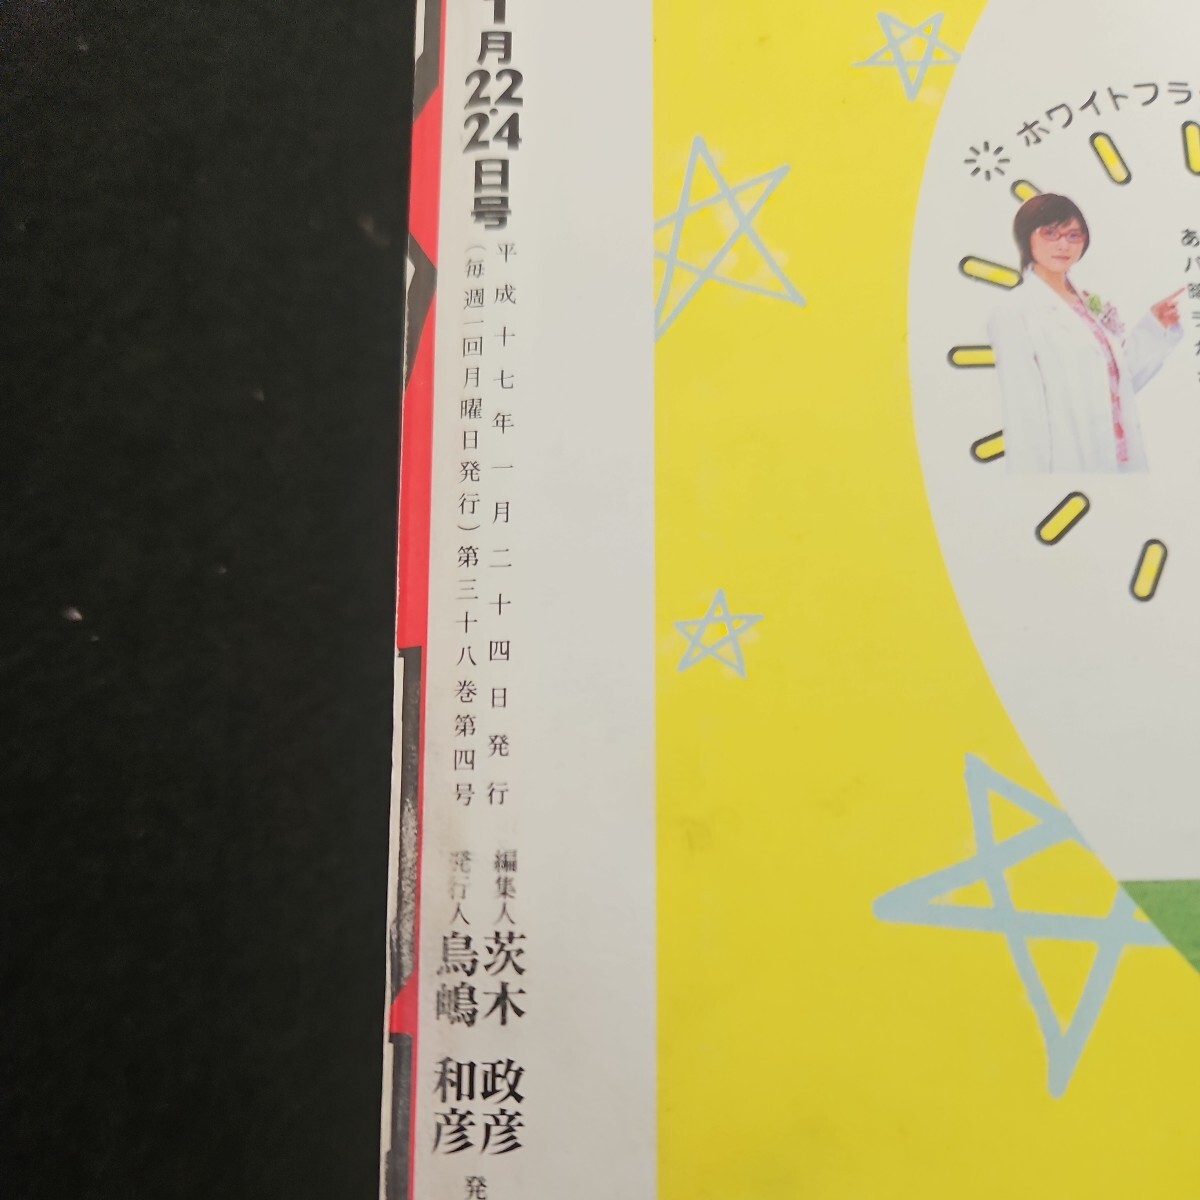 い57-060 週刊少年 ジャンプ ワンピース ブリーチ ナルト 銀魂 デスノート 平成17年1月24日発行_画像3